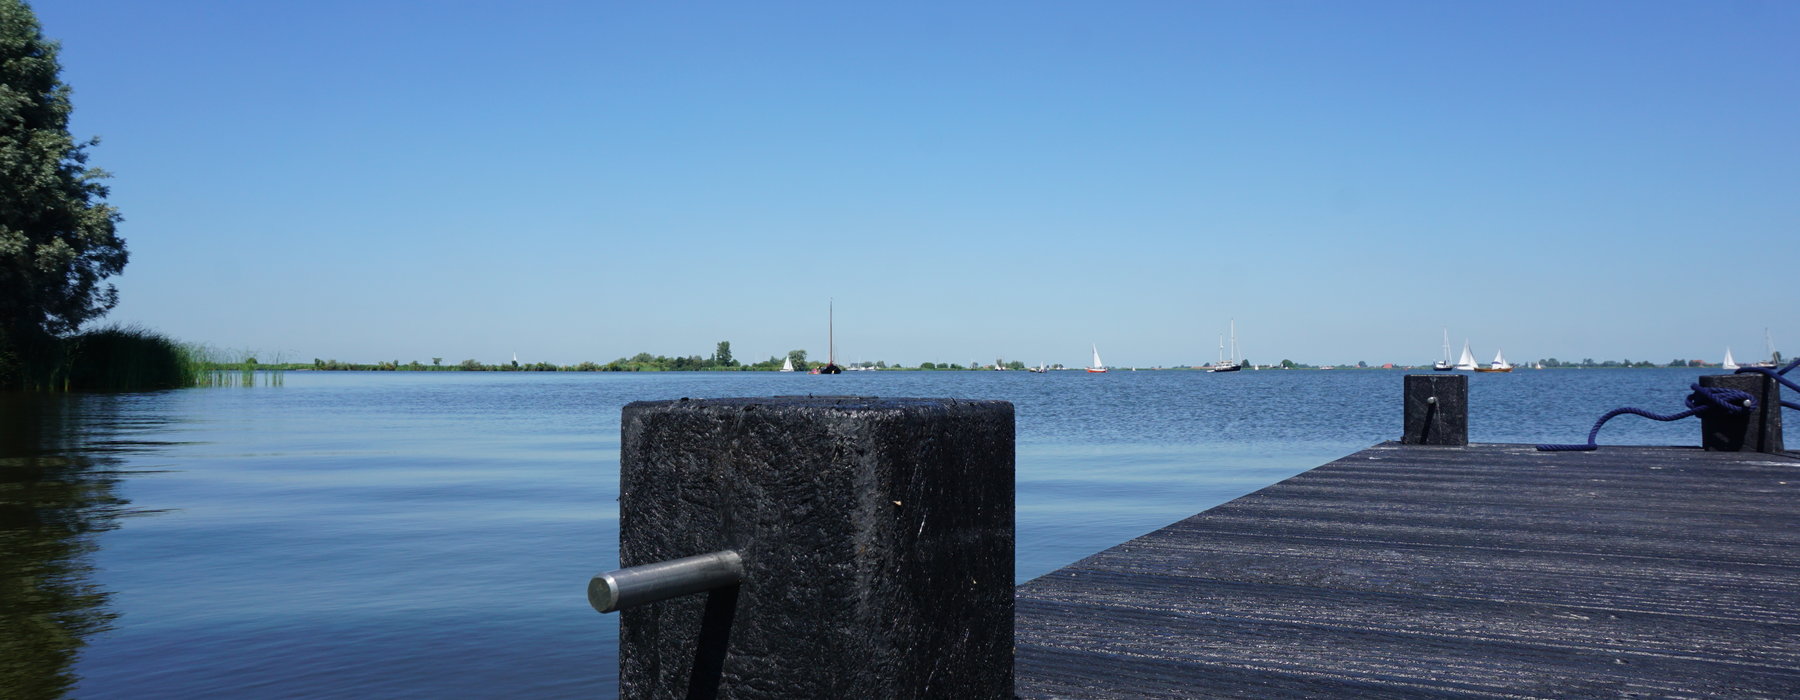 Totaalbeleving op en rond de Friese meren